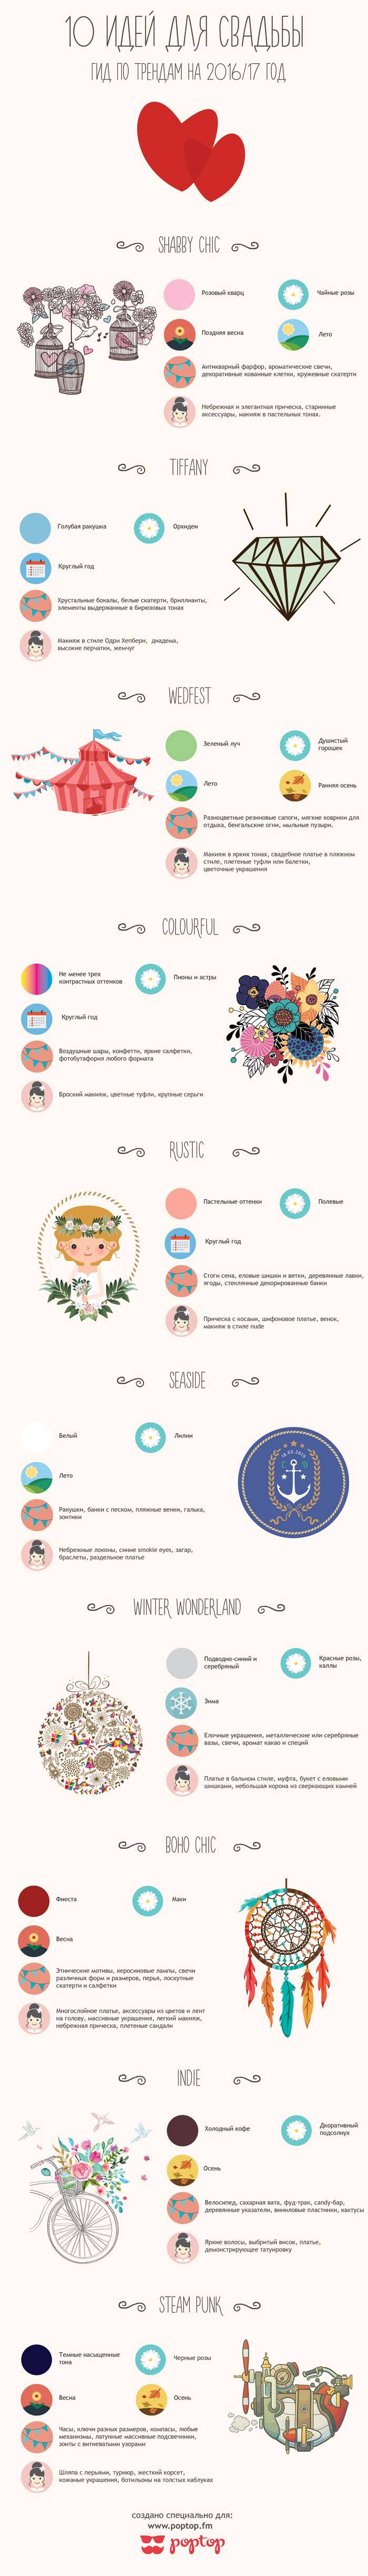 Идеи для тематической свадьбы - Инфографика, подробный гид по 10 оригинальным идеям на 2016-2017 год